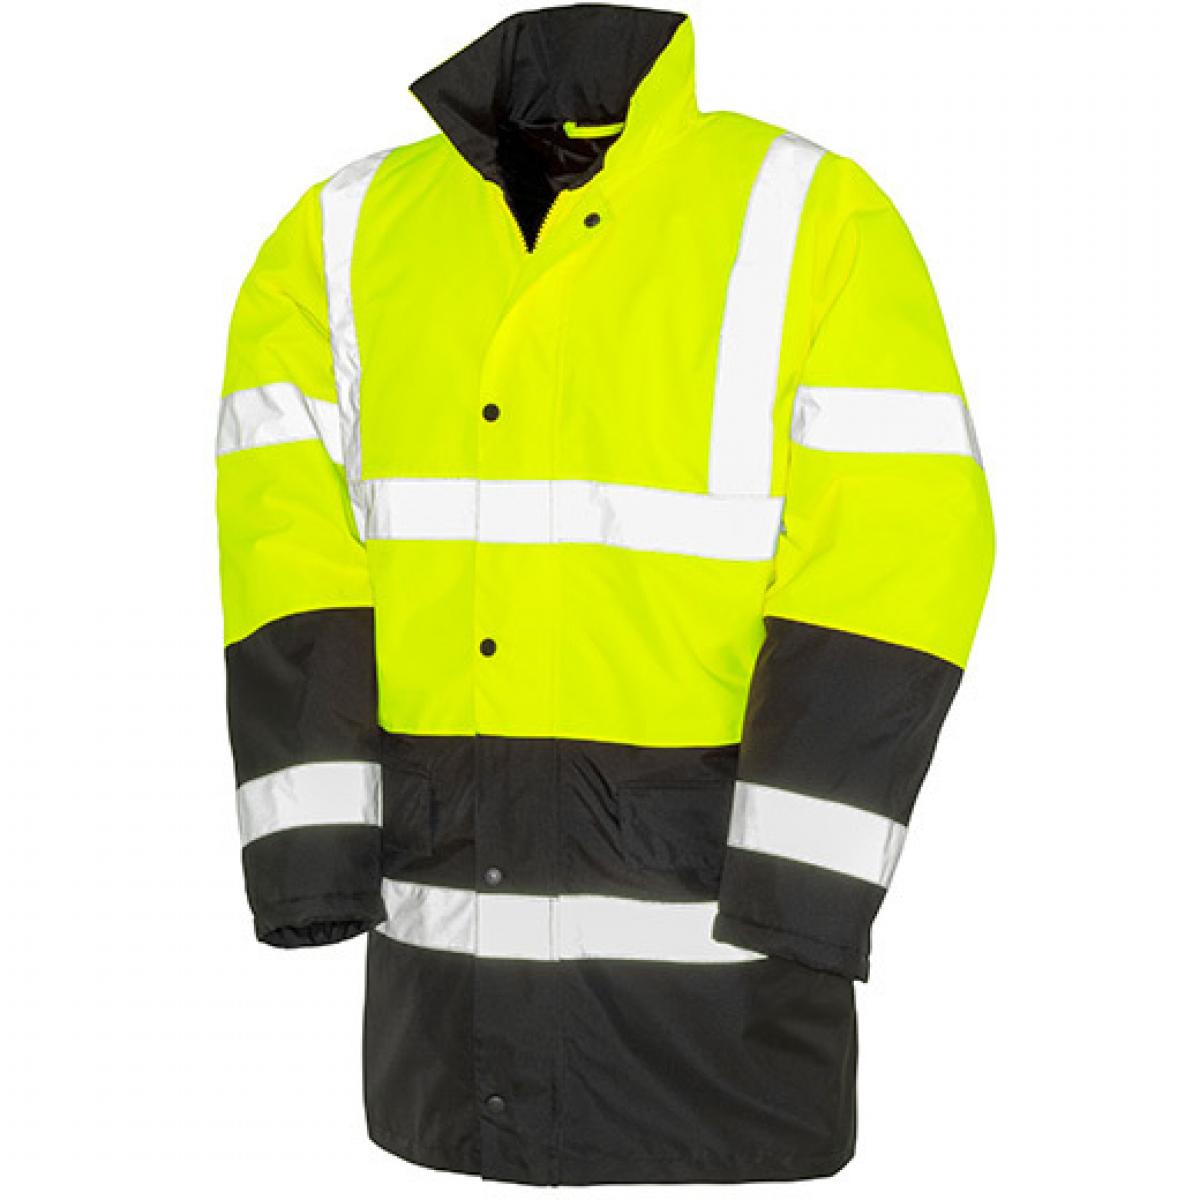 Hersteller: Safe-Guard Herstellernummer: R452X Artikelbezeichnung: Herren Jacke Motorway 2-Tone Safety Coat Farbe: Fluorescent Yellow/Black